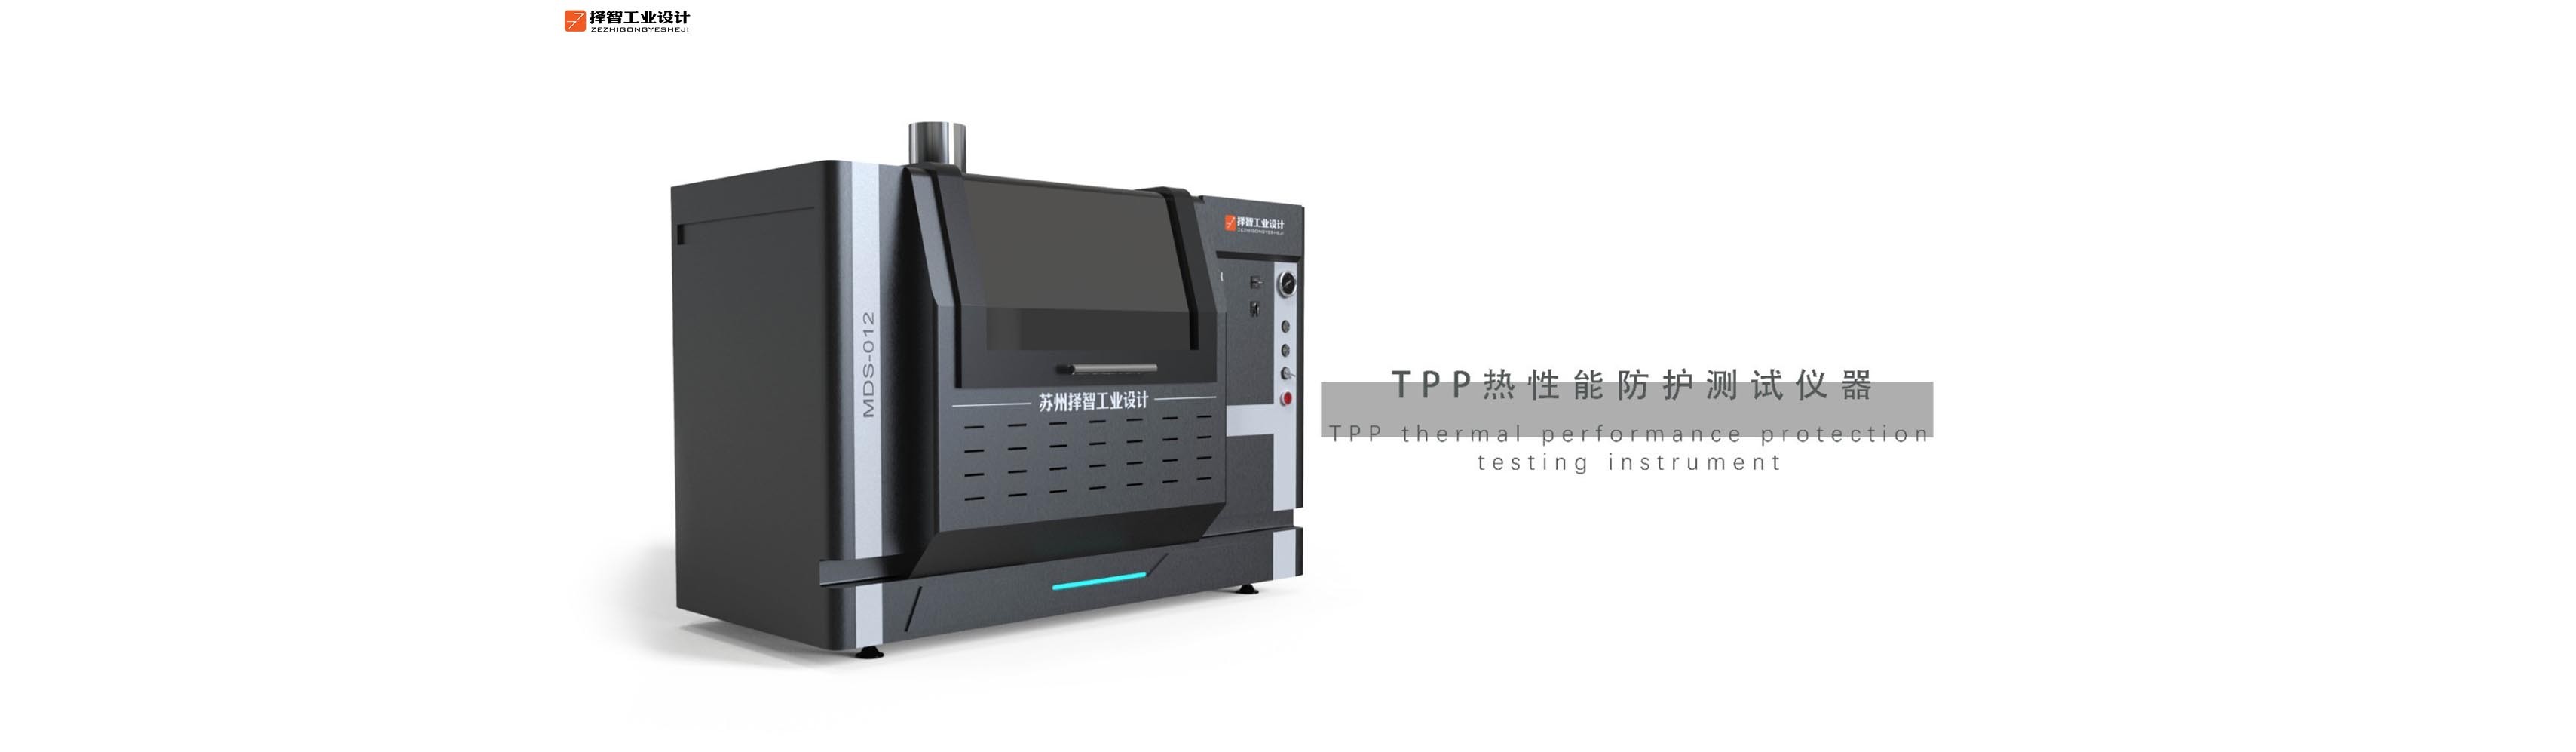 上海工业产品设计产品外观设计智能外观设计TPP热性能防护测试仪外观设计